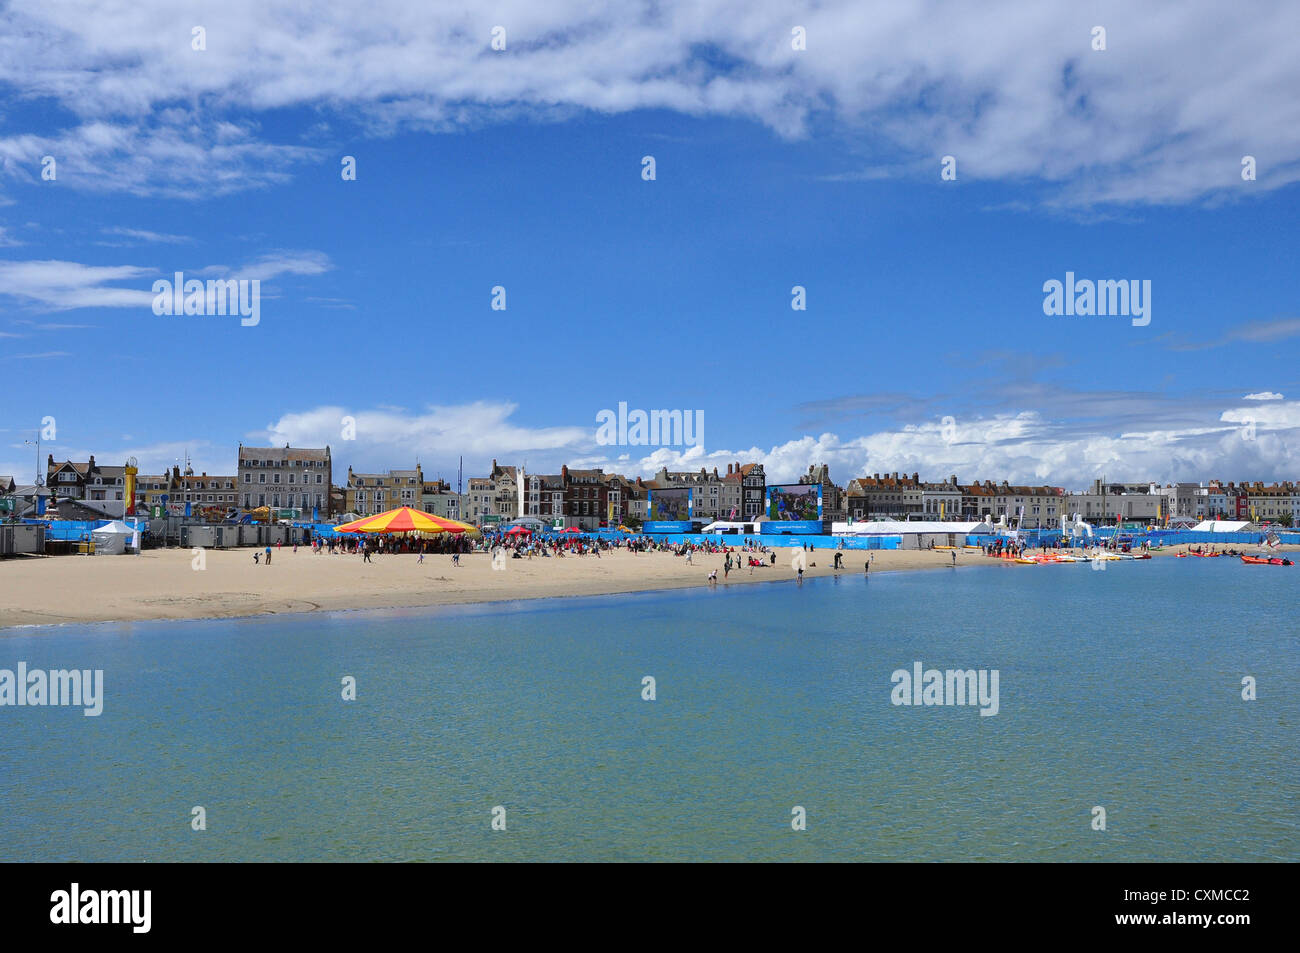 Spiaggia di Weymouth, gare di vela su grandi schermi durante le Olimpiadi di Londra 2012. Foto Stock